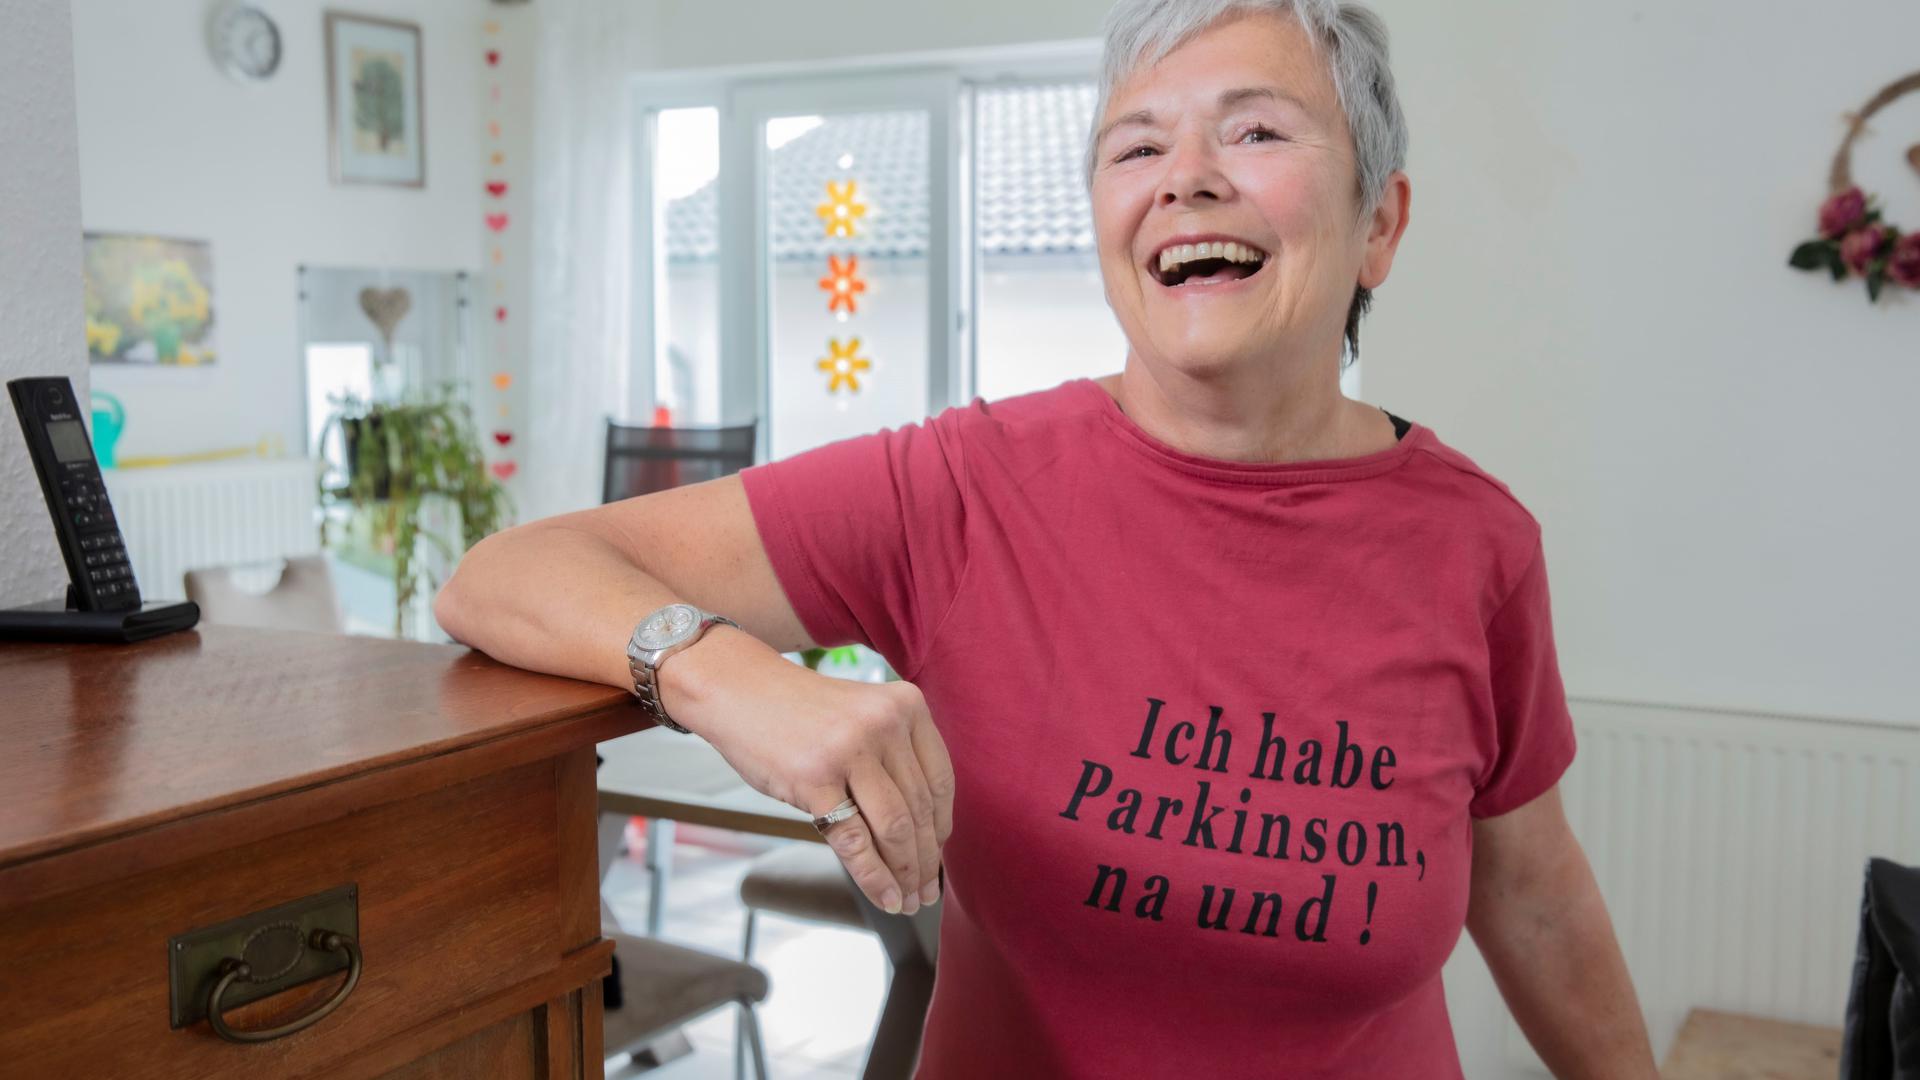 Iris Kraft steht mit Parkinson T-Shirt in ihrer Wohnung.